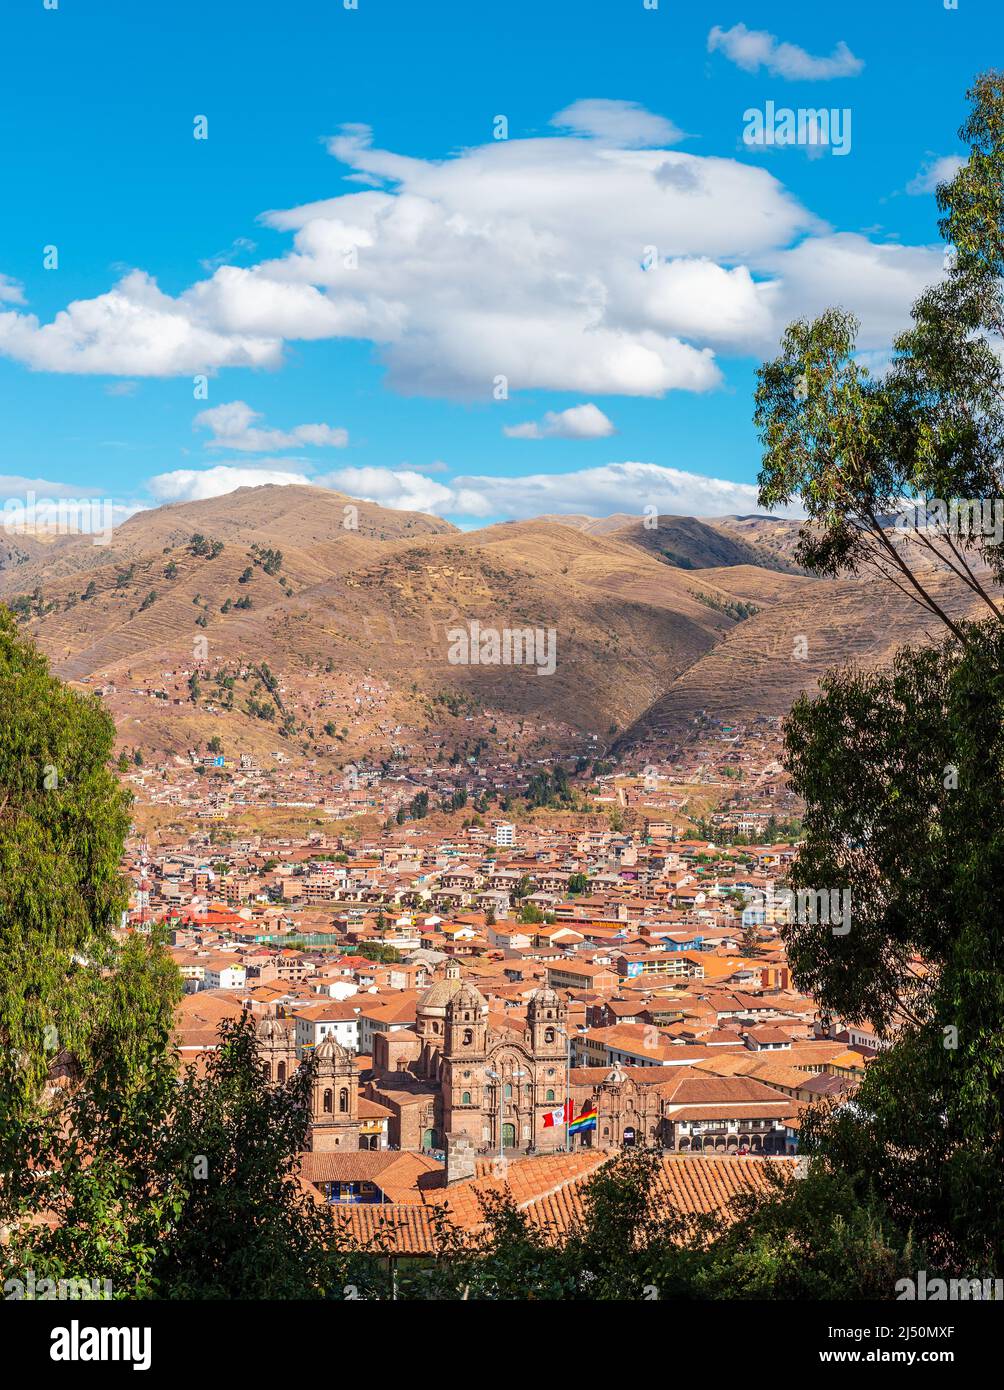 Vertical aerial city skyline of ancient inca capital Cusco with Compania de Jesus church and Plaza de Armas square, Cusco province, Peru. Stock Photo